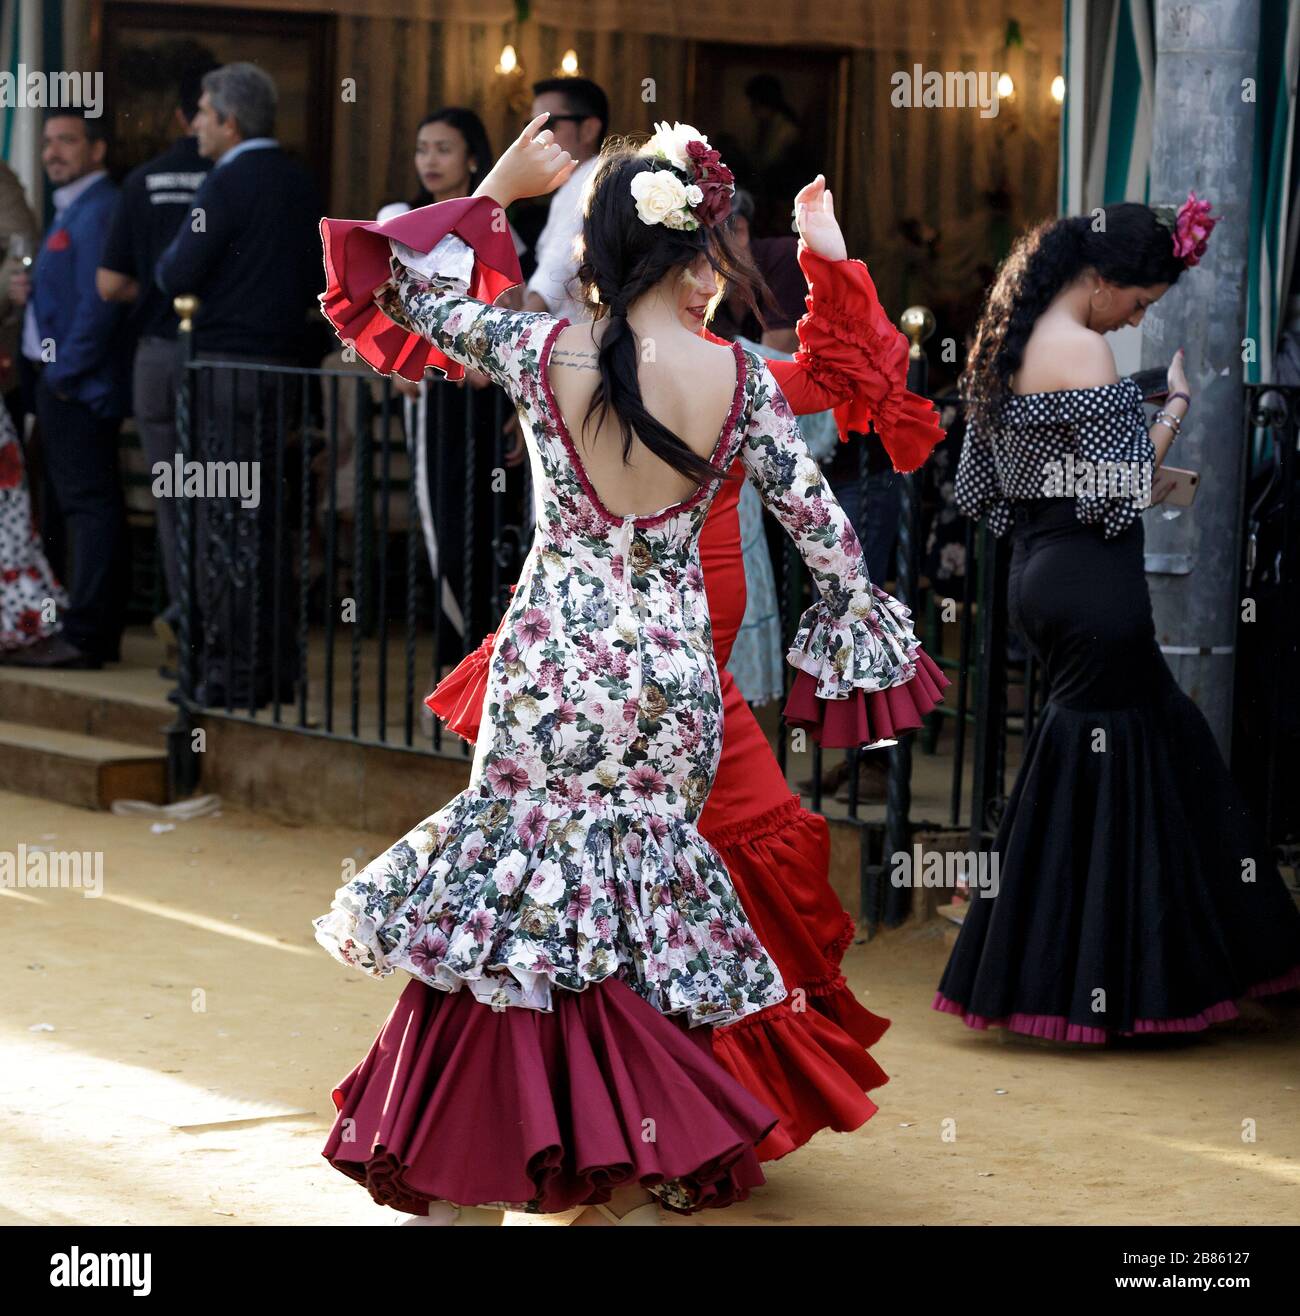 Junge Frauen, die Flamenco-Kleider tragen und auf der Aprilmesse (Feria de  Abril), der Messe von Sevilla, "Sevillanas" tanzen Stockfotografie - Alamy